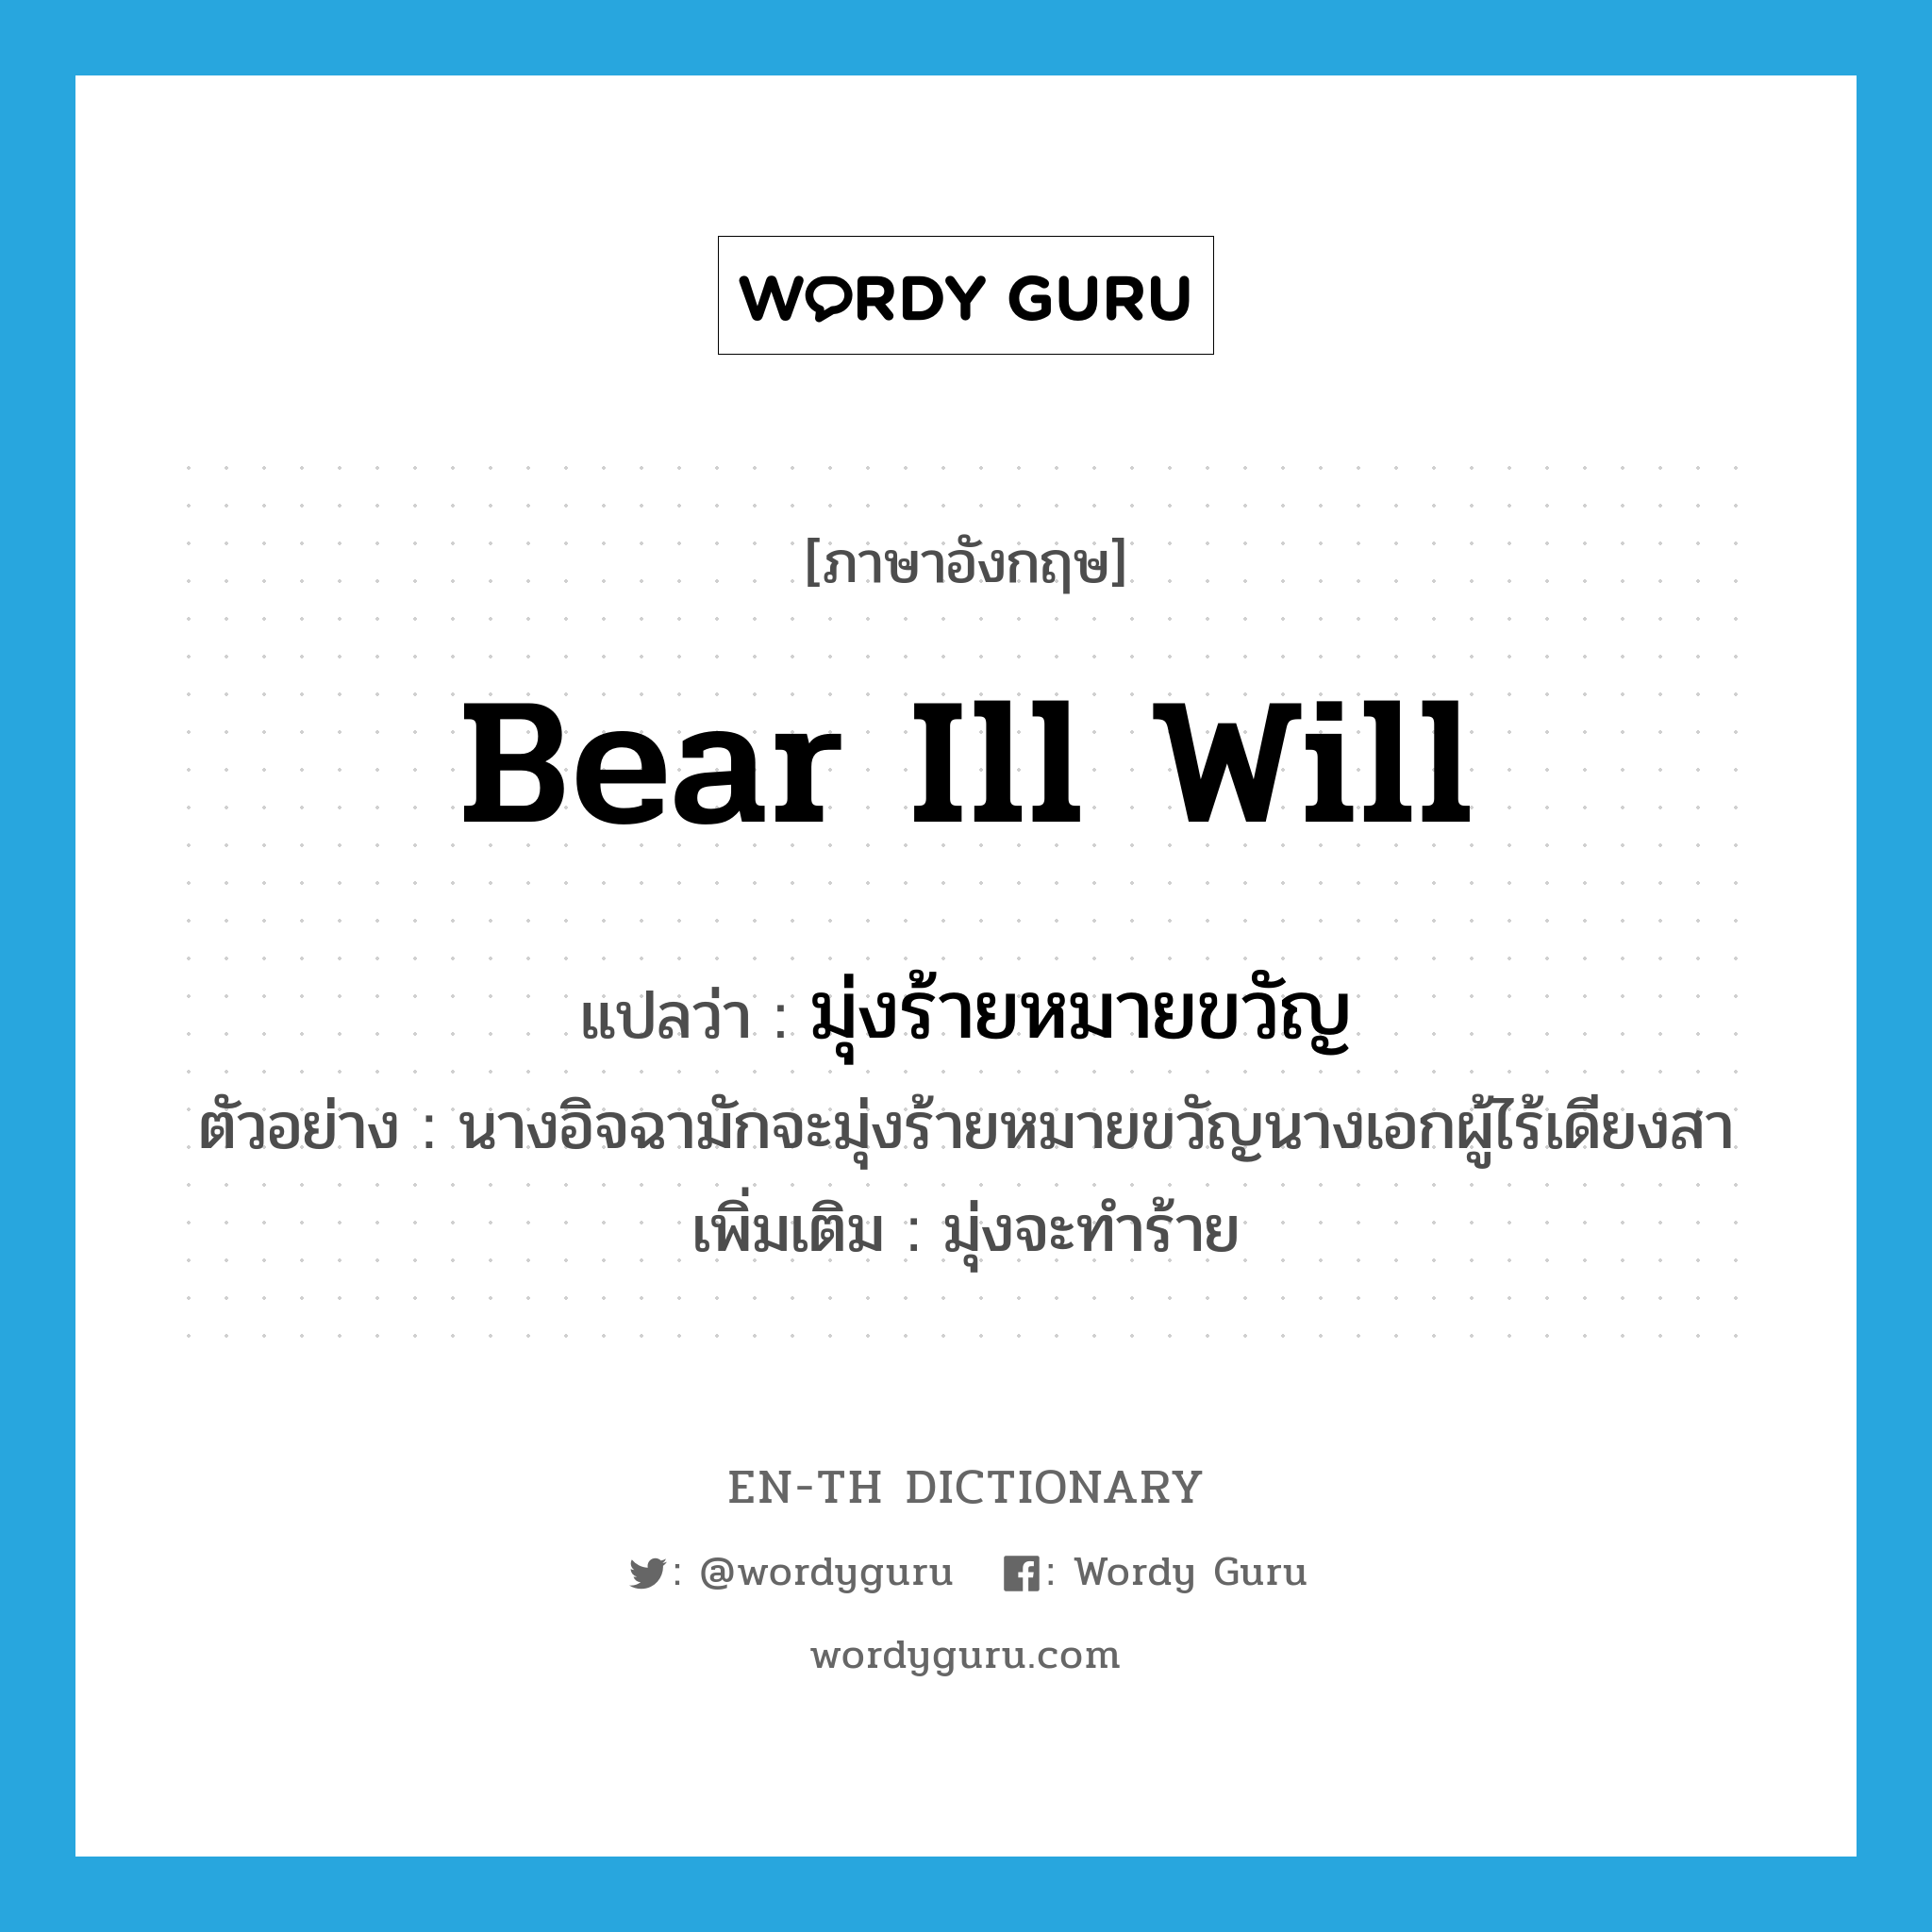 bear ill will แปลว่า?, คำศัพท์ภาษาอังกฤษ bear ill will แปลว่า มุ่งร้ายหมายขวัญ ประเภท V ตัวอย่าง นางอิจฉามักจะมุ่งร้ายหมายขวัญนางเอกผู้ไร้เดียงสา เพิ่มเติม มุ่งจะทำร้าย หมวด V